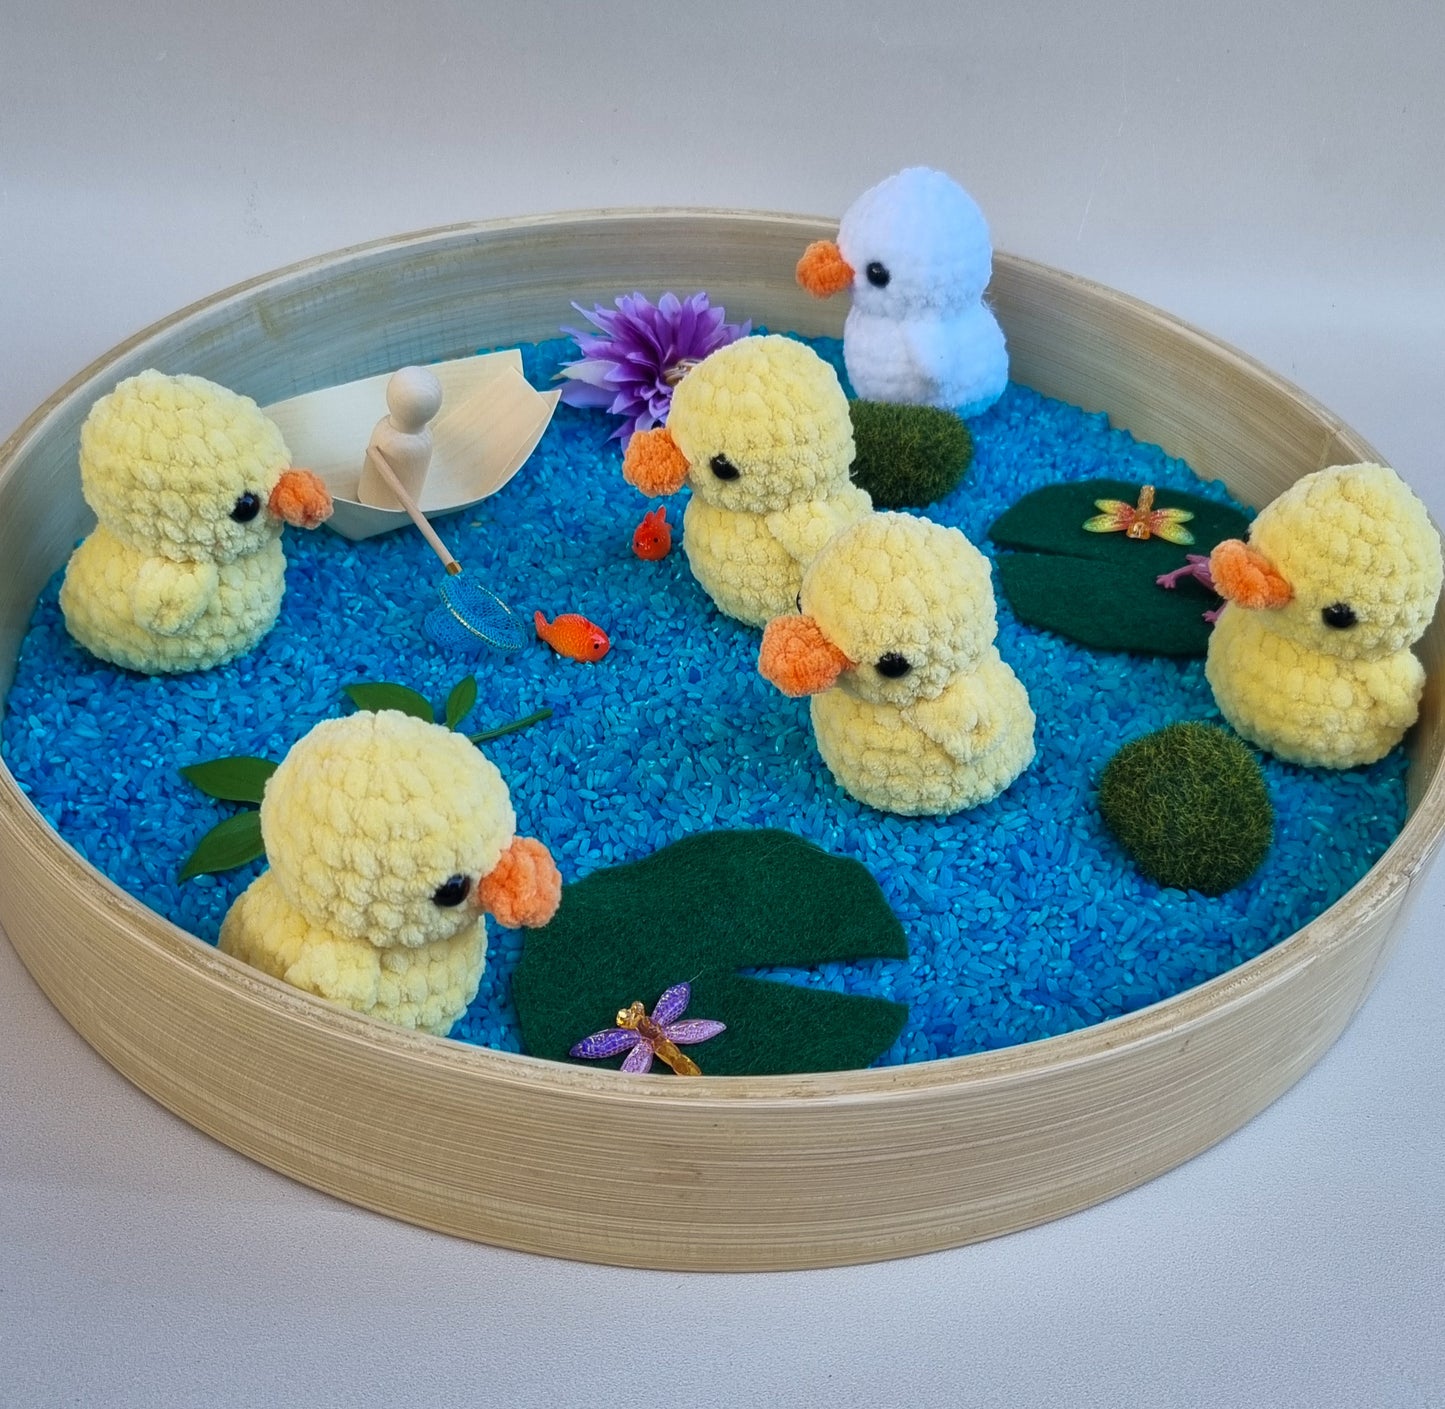 5 Little Ducks Sensory Kit